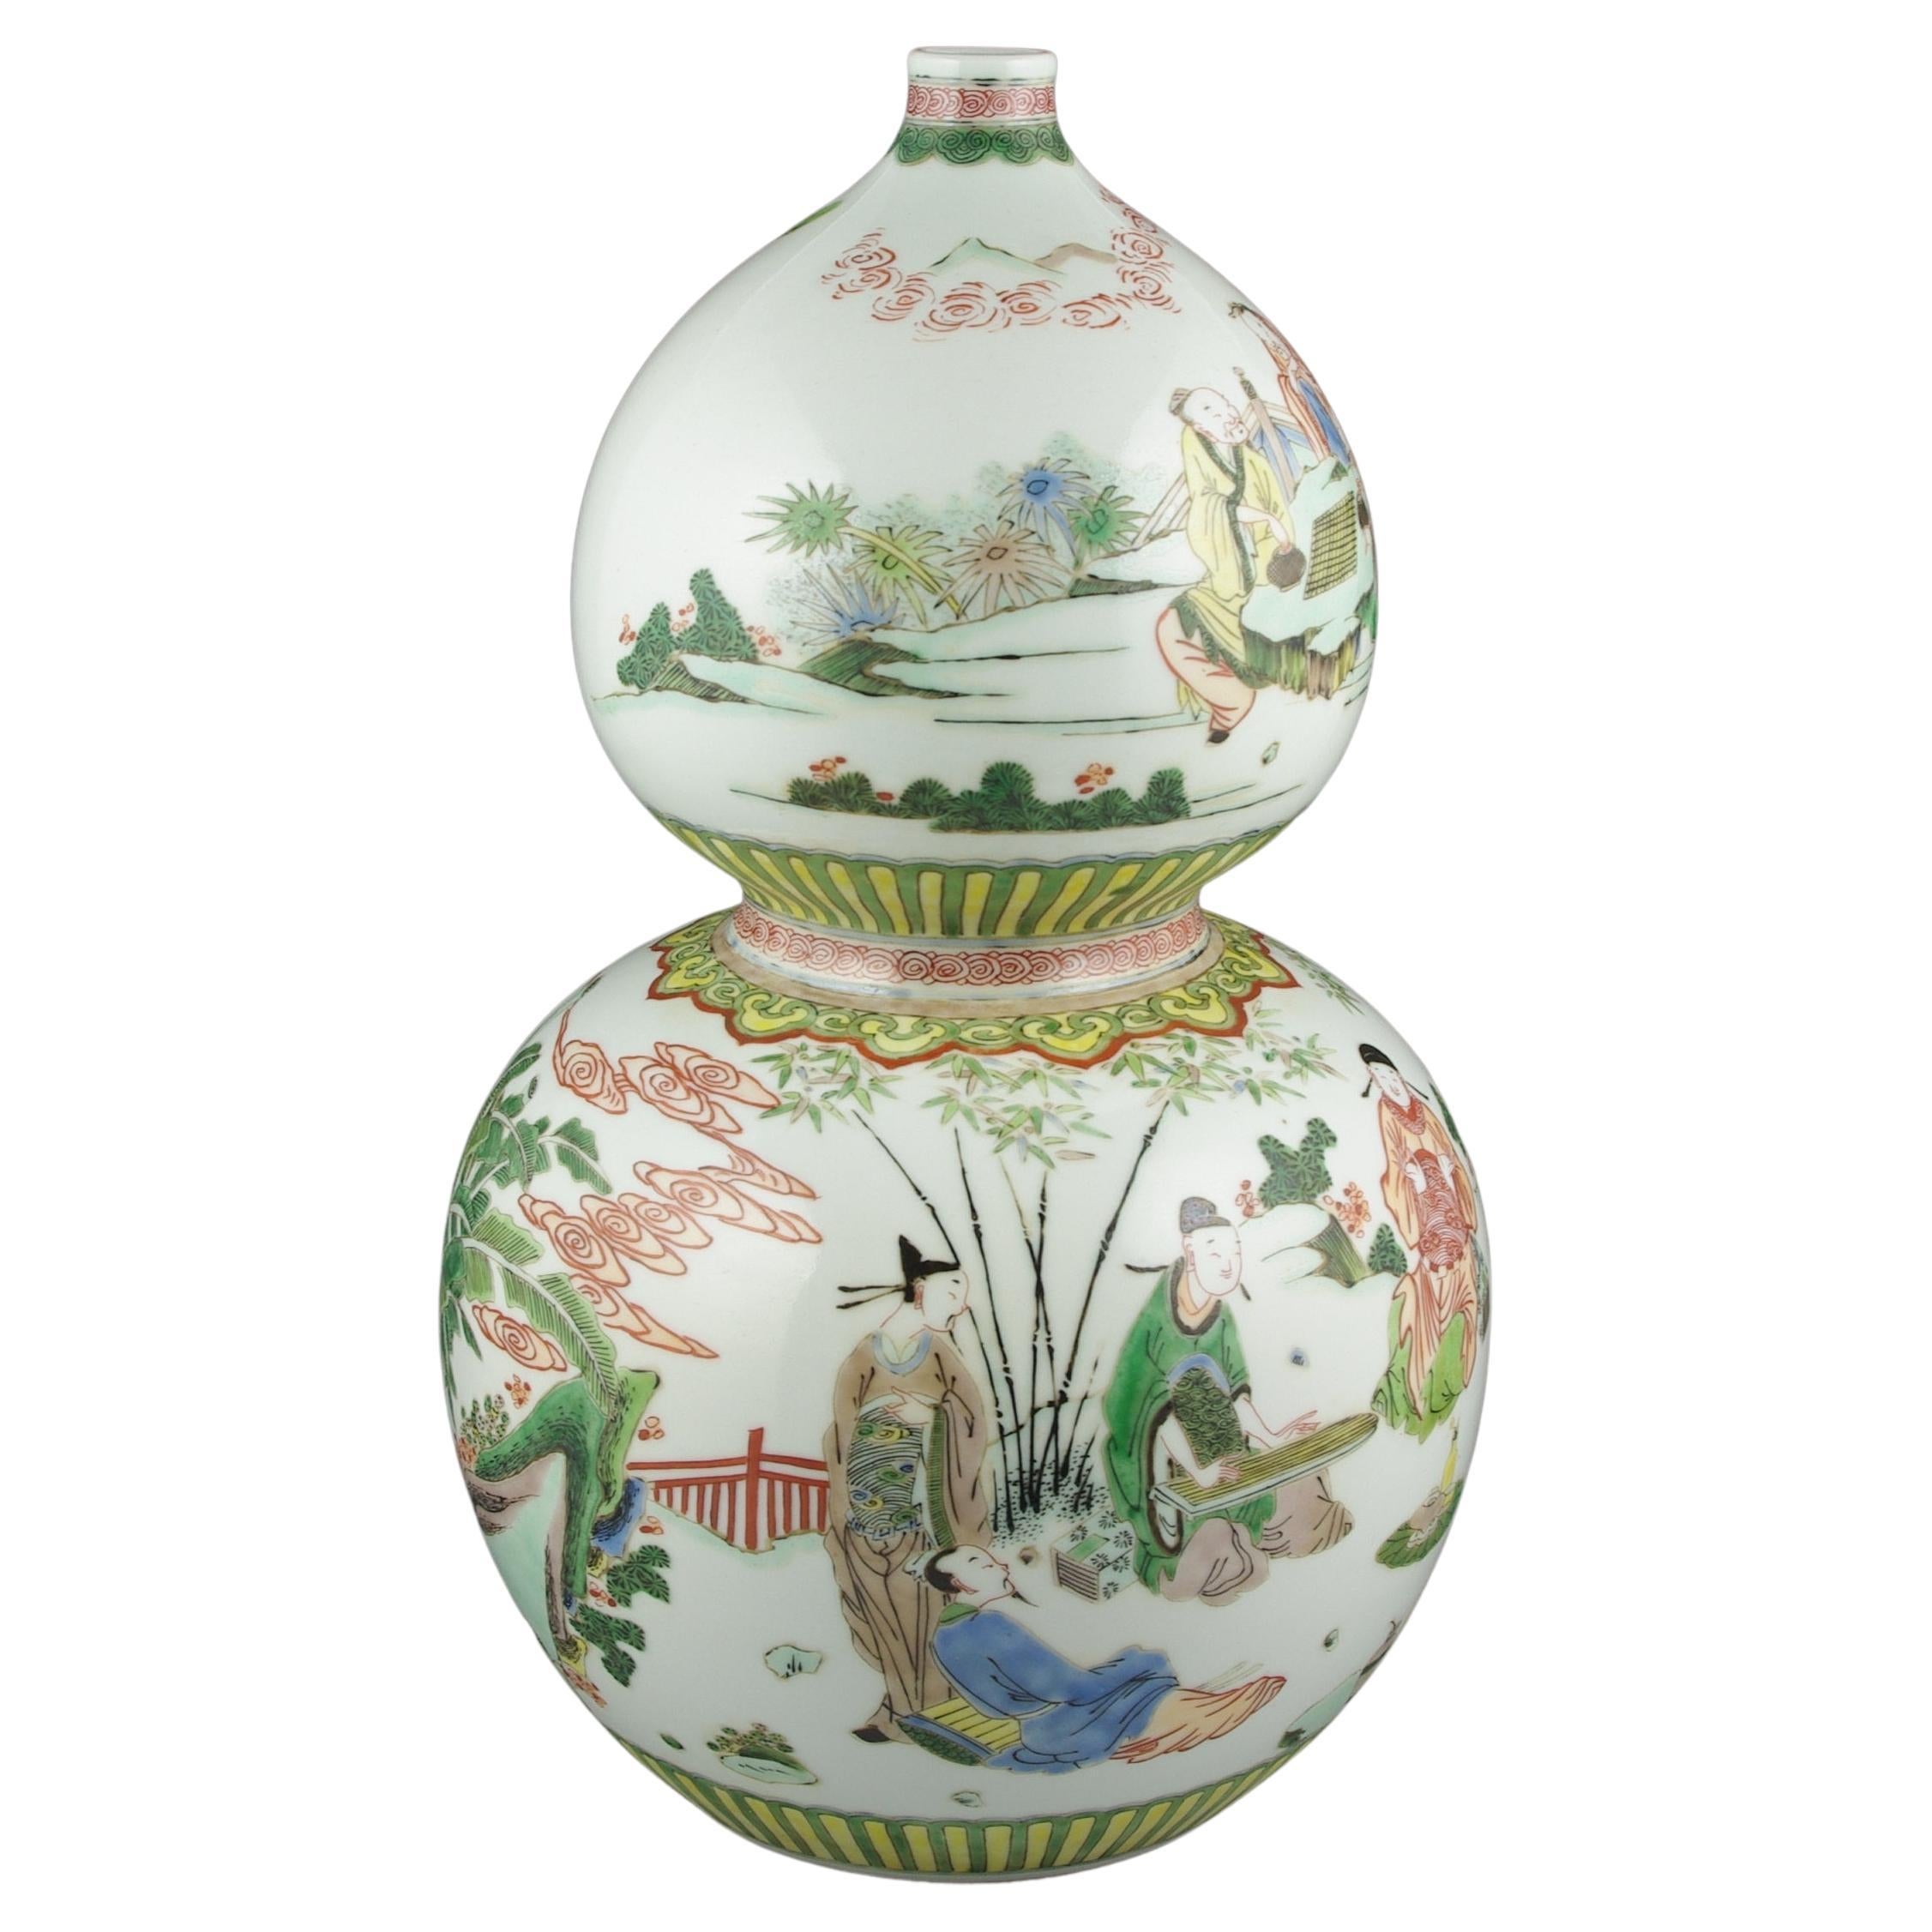 Un grand et splendide vase chinois ancien, fabriqué dans la forme caractéristique d'une double gourde, présente une peinture à la main méticuleuse dans la palette vibrante de la famille rose de Fencai. Le vase représente des personnages parés de